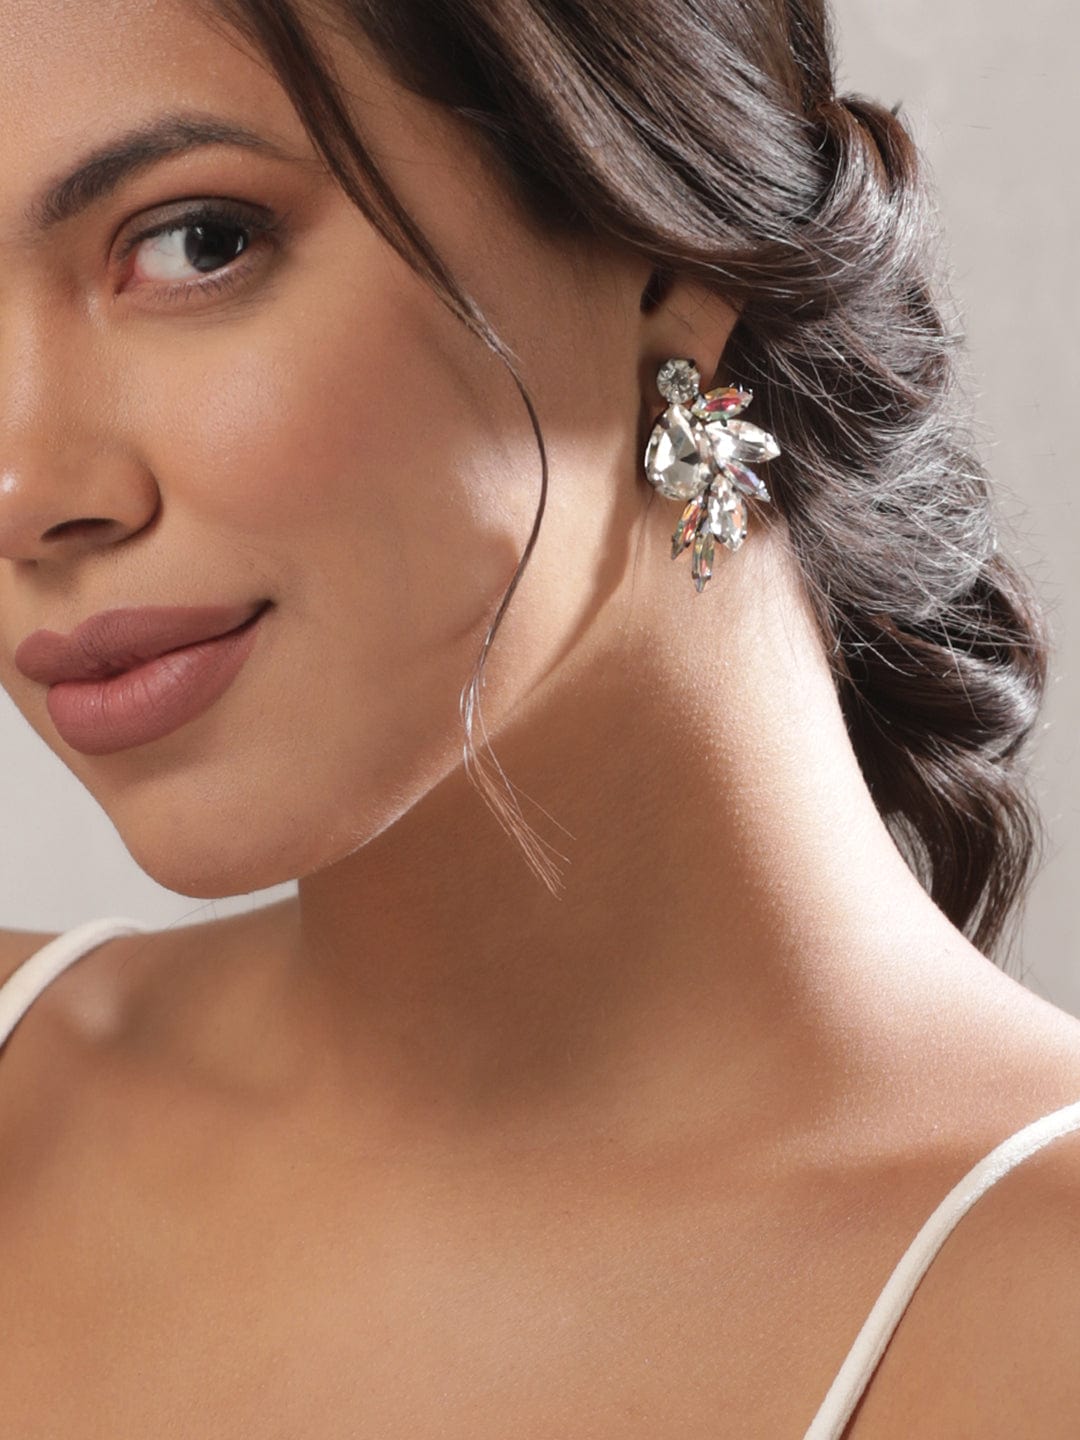 Rubans oxidized Silver Crystal Statement stud Earring Earrings